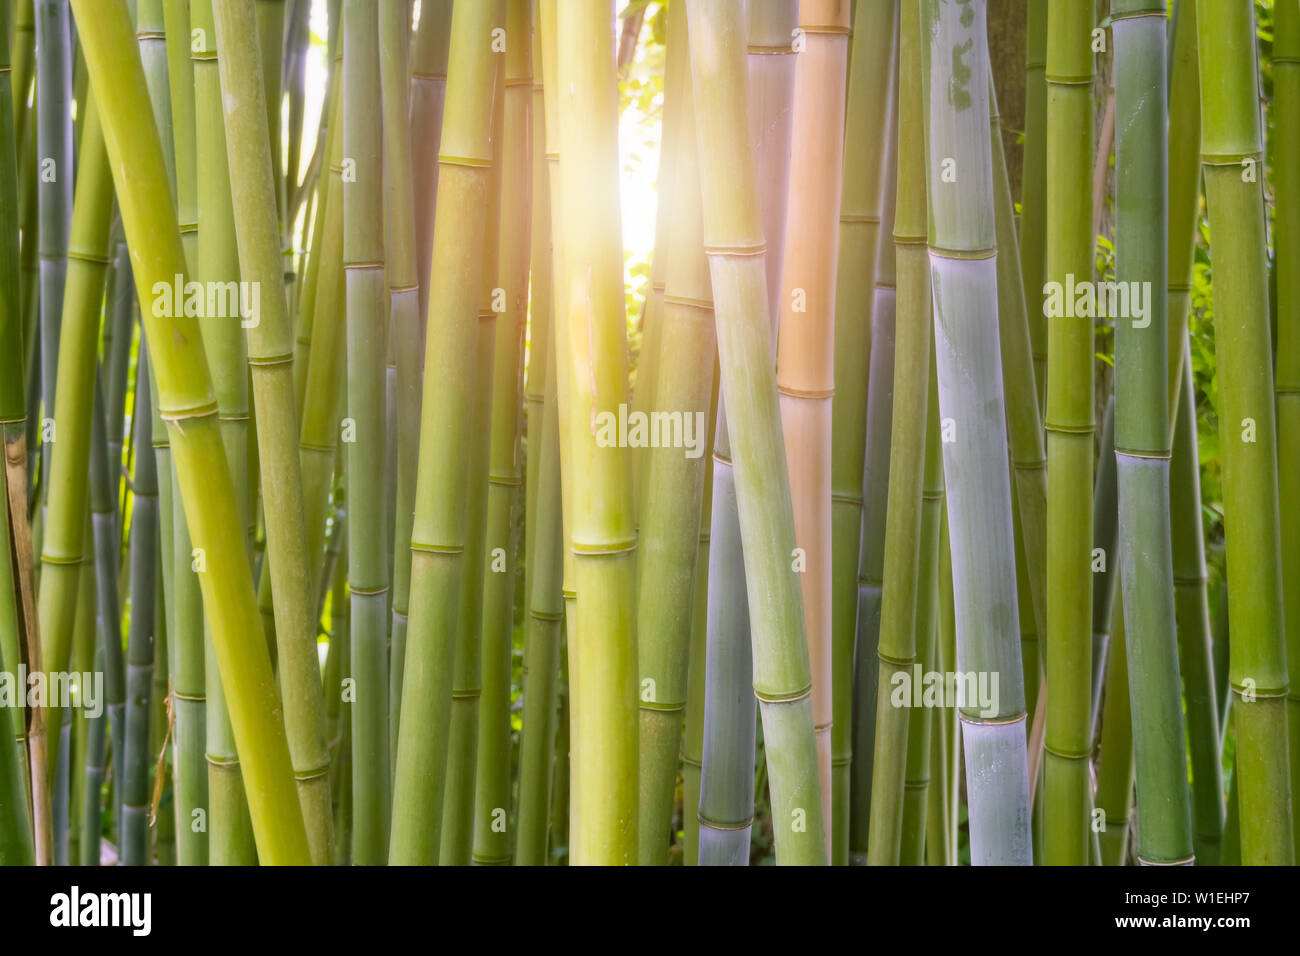 Bambus, Bambusoideae, Wald close-up mit Licht Aufflackern oder bersten scheint durch die Stiele. Anlagen- und grünen Hintergrund, Hintergrund oder Tapeten. Stockfoto